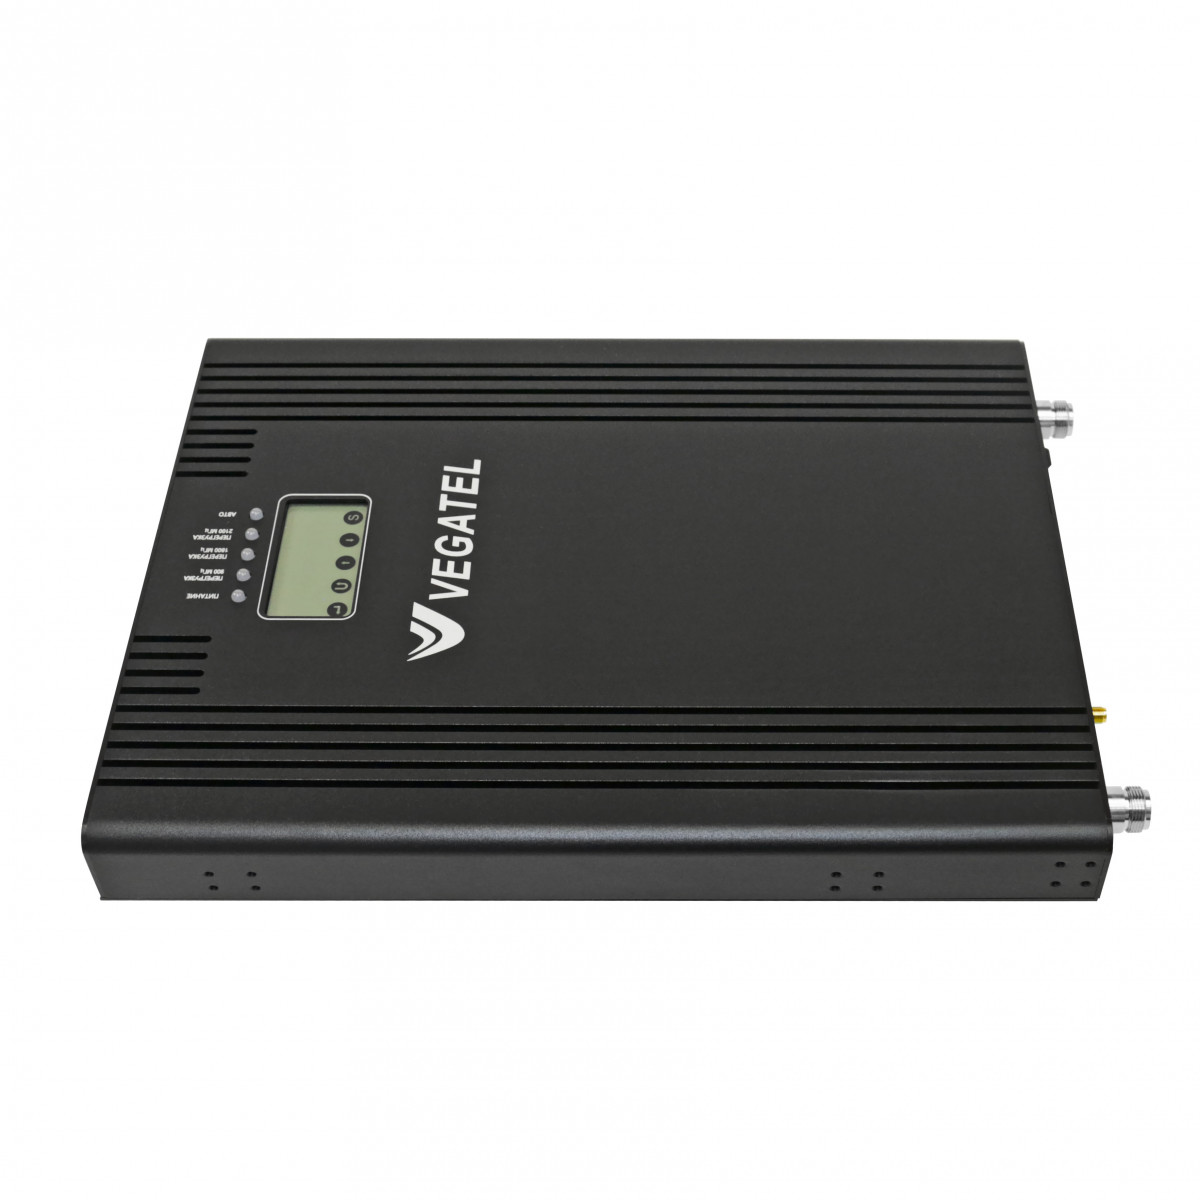 Детальное изображение товара "Репитер Vegatel VT3-900E/1800/2100" из каталога оборудования Антенна76